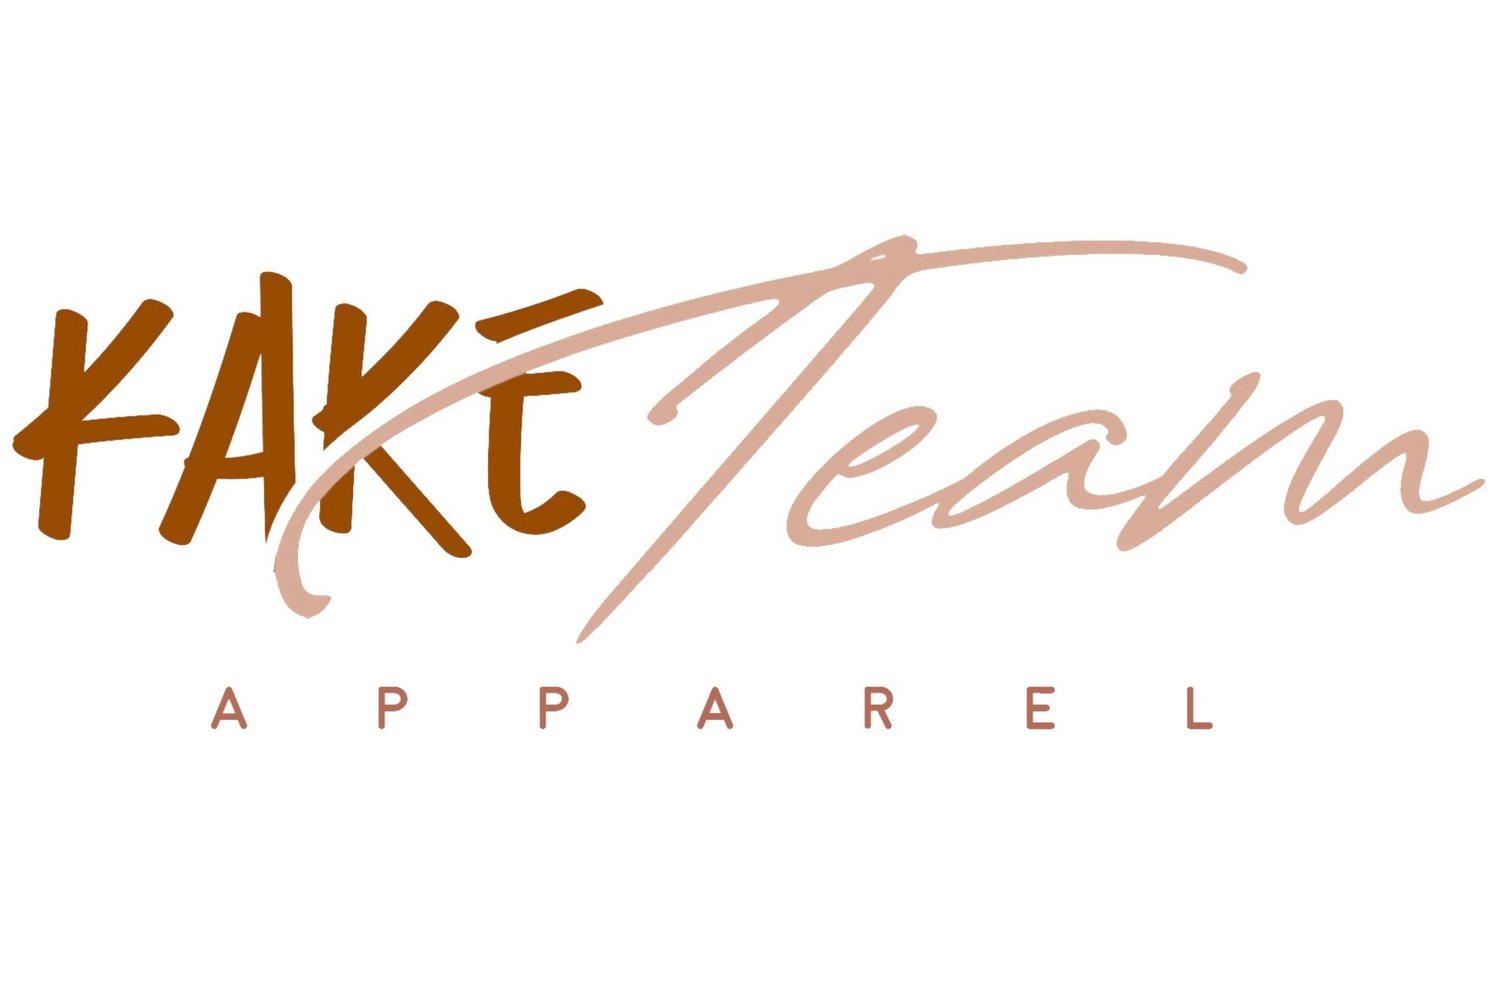 Kake Team Apparel